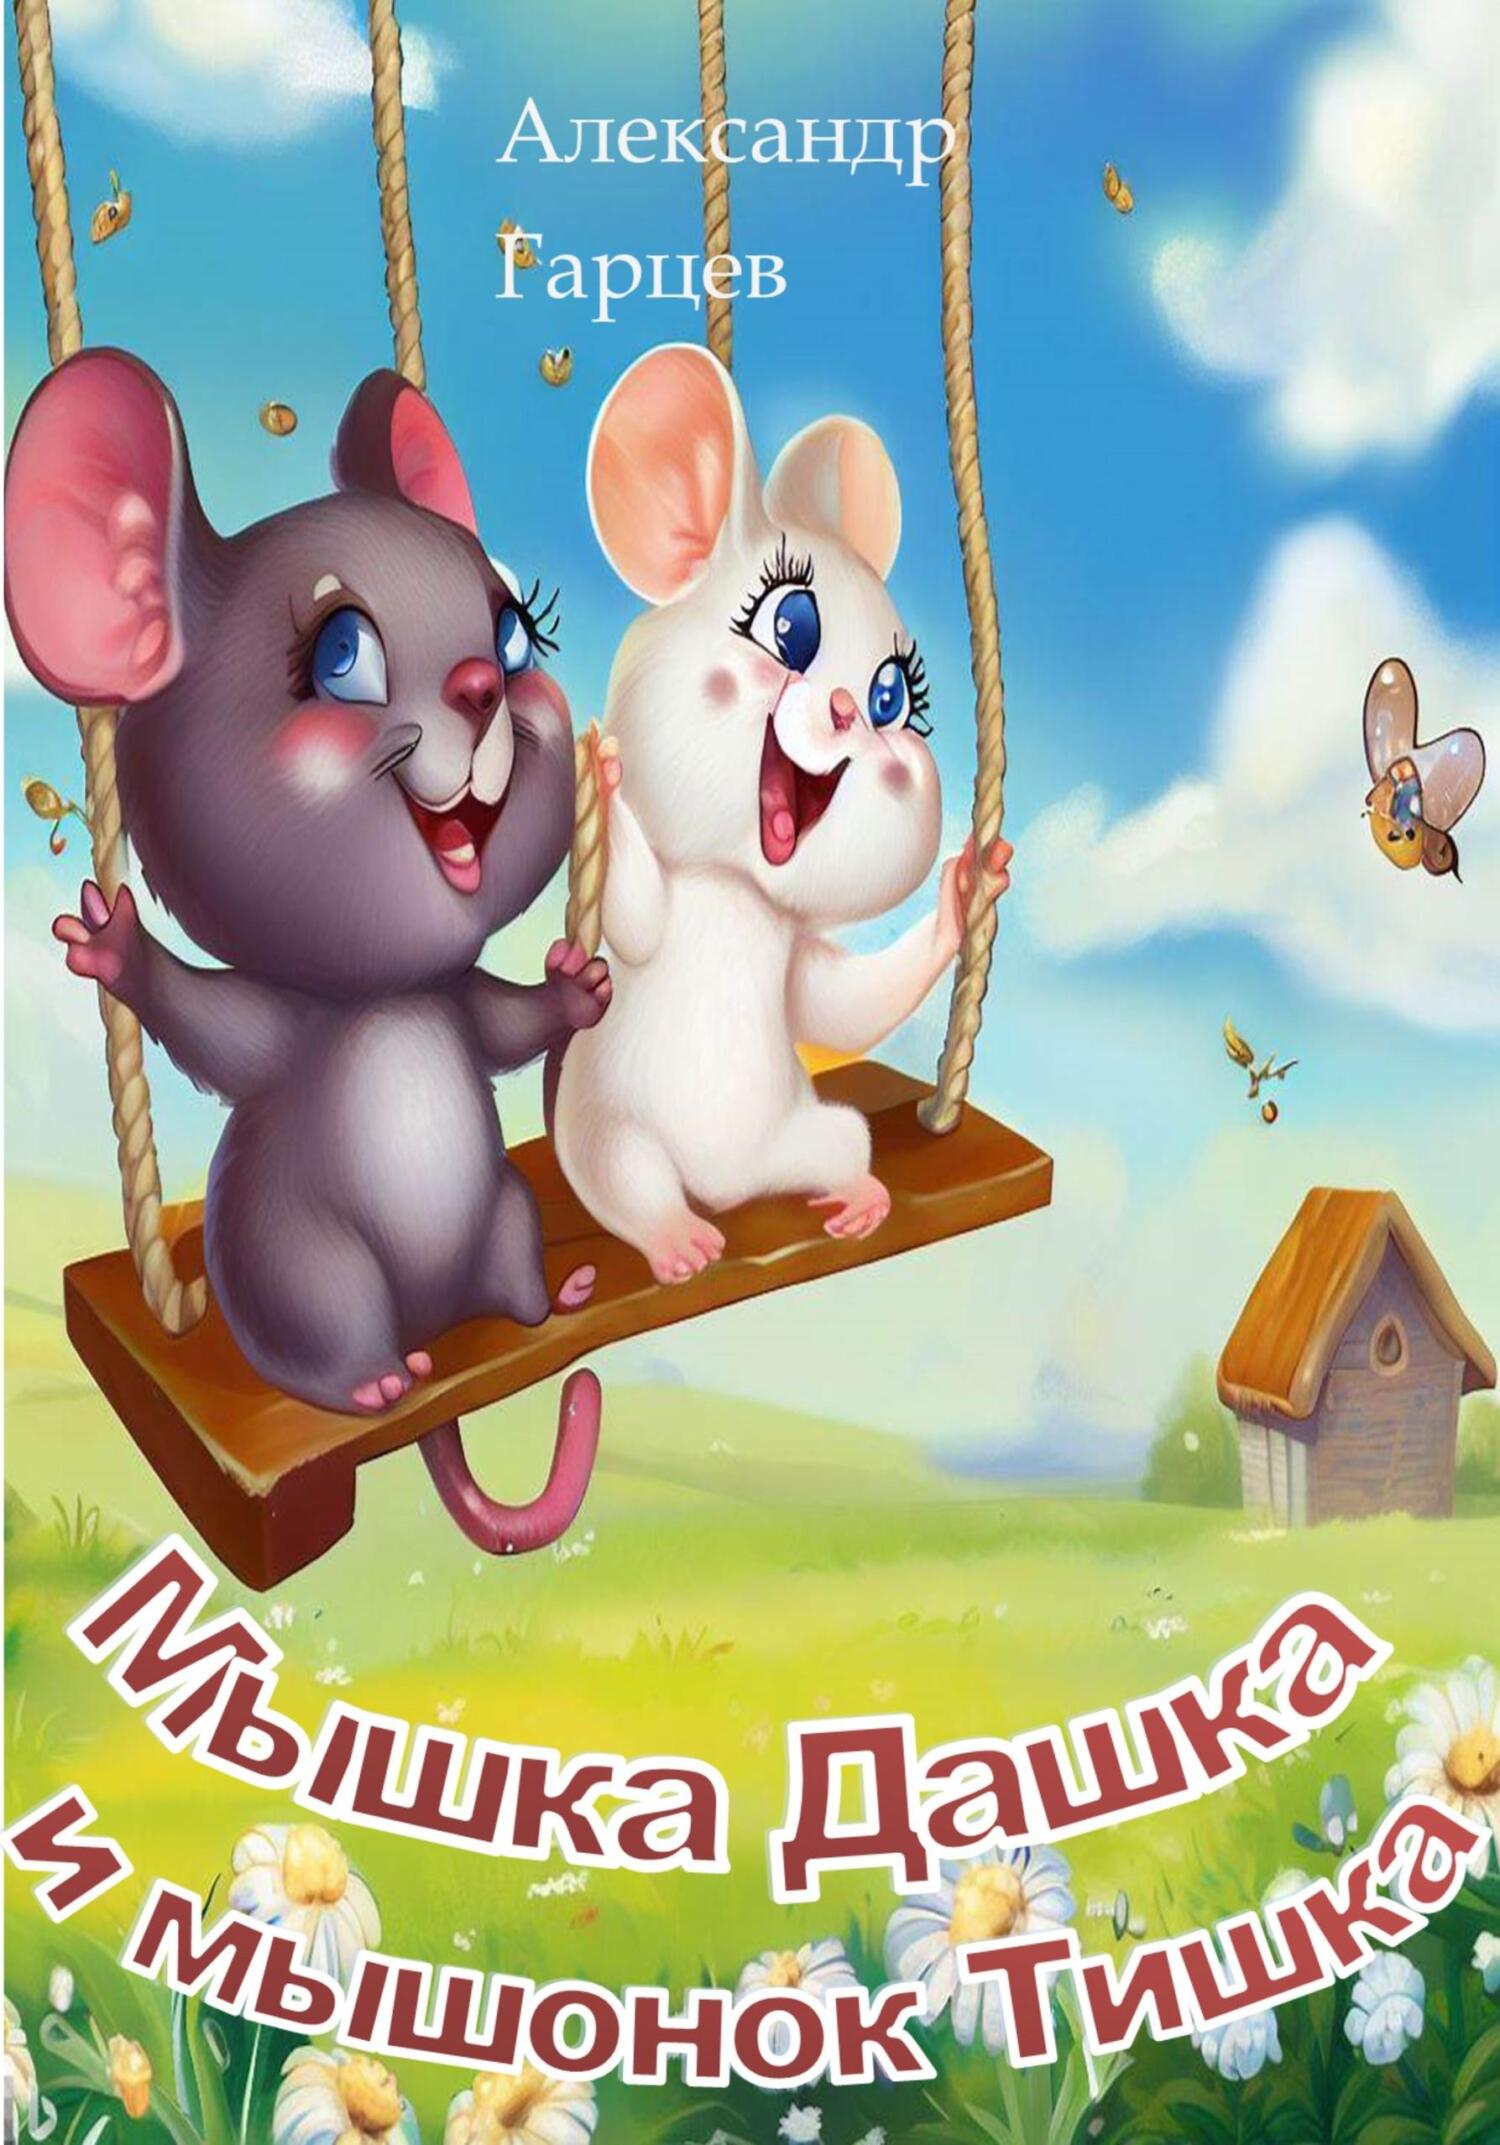 Мышка Дашка и мышонок Тишка - Александр Гарцев